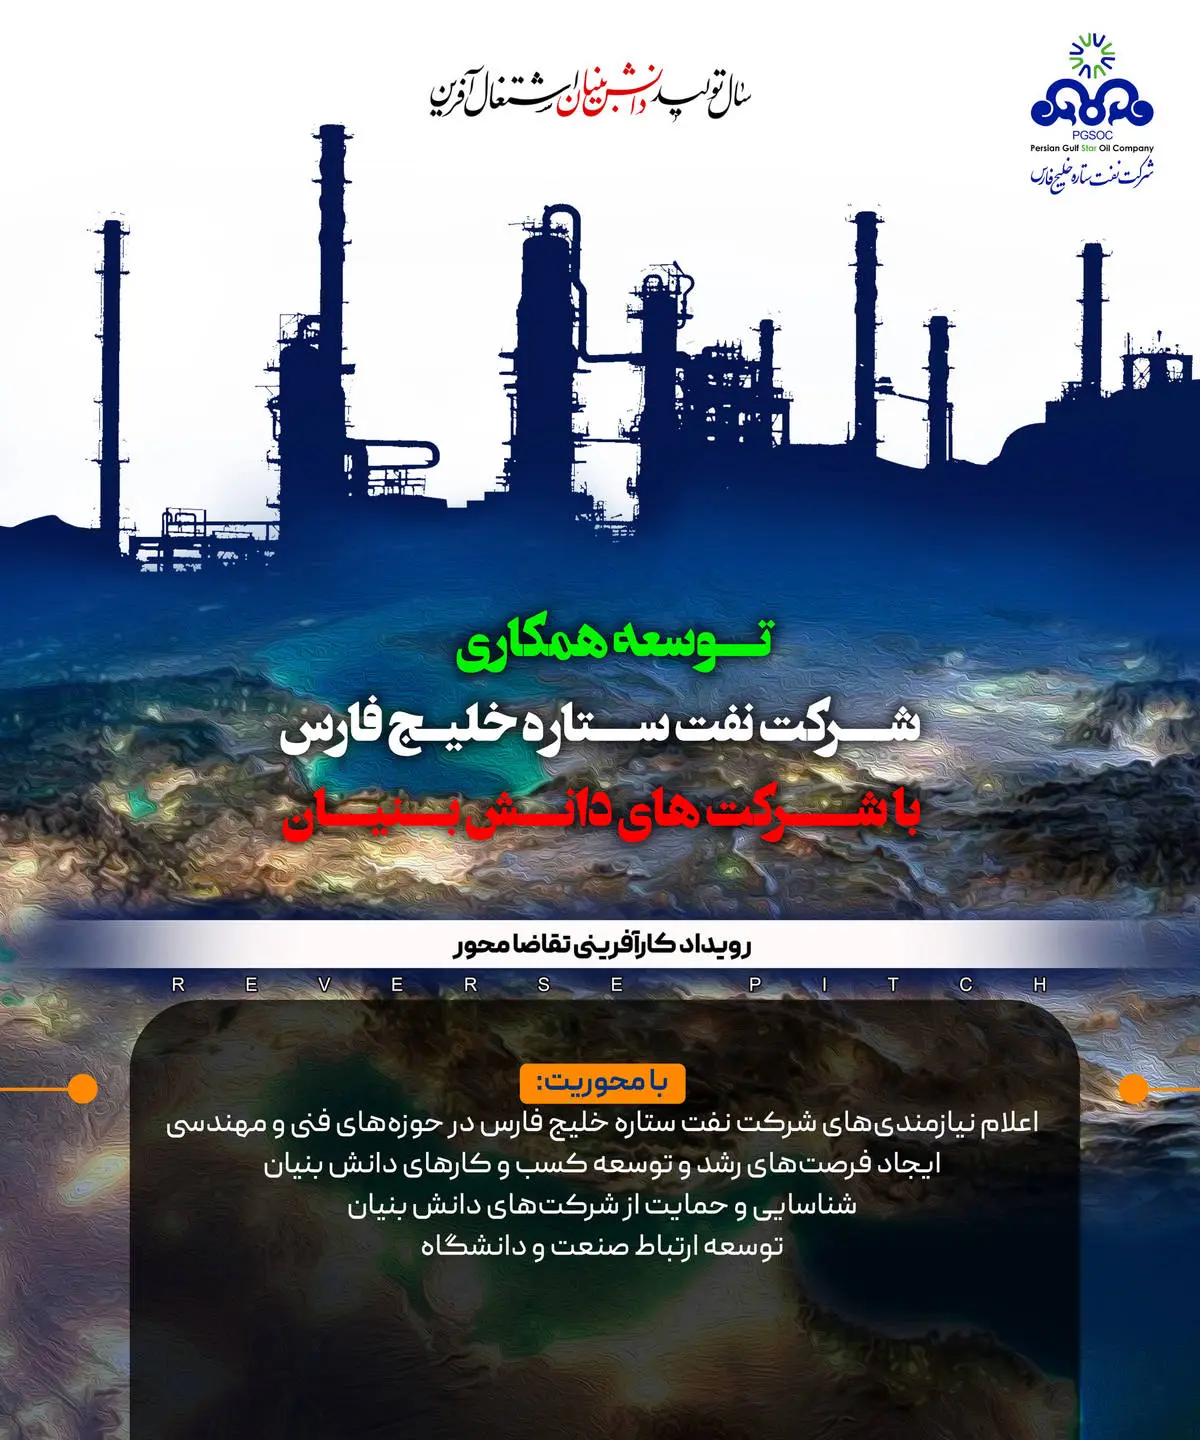 اطلاعیه شماره 2 توسعه همکاری شرکت نفت ستاره خلیج فارس با شرکت های دانش بنیان